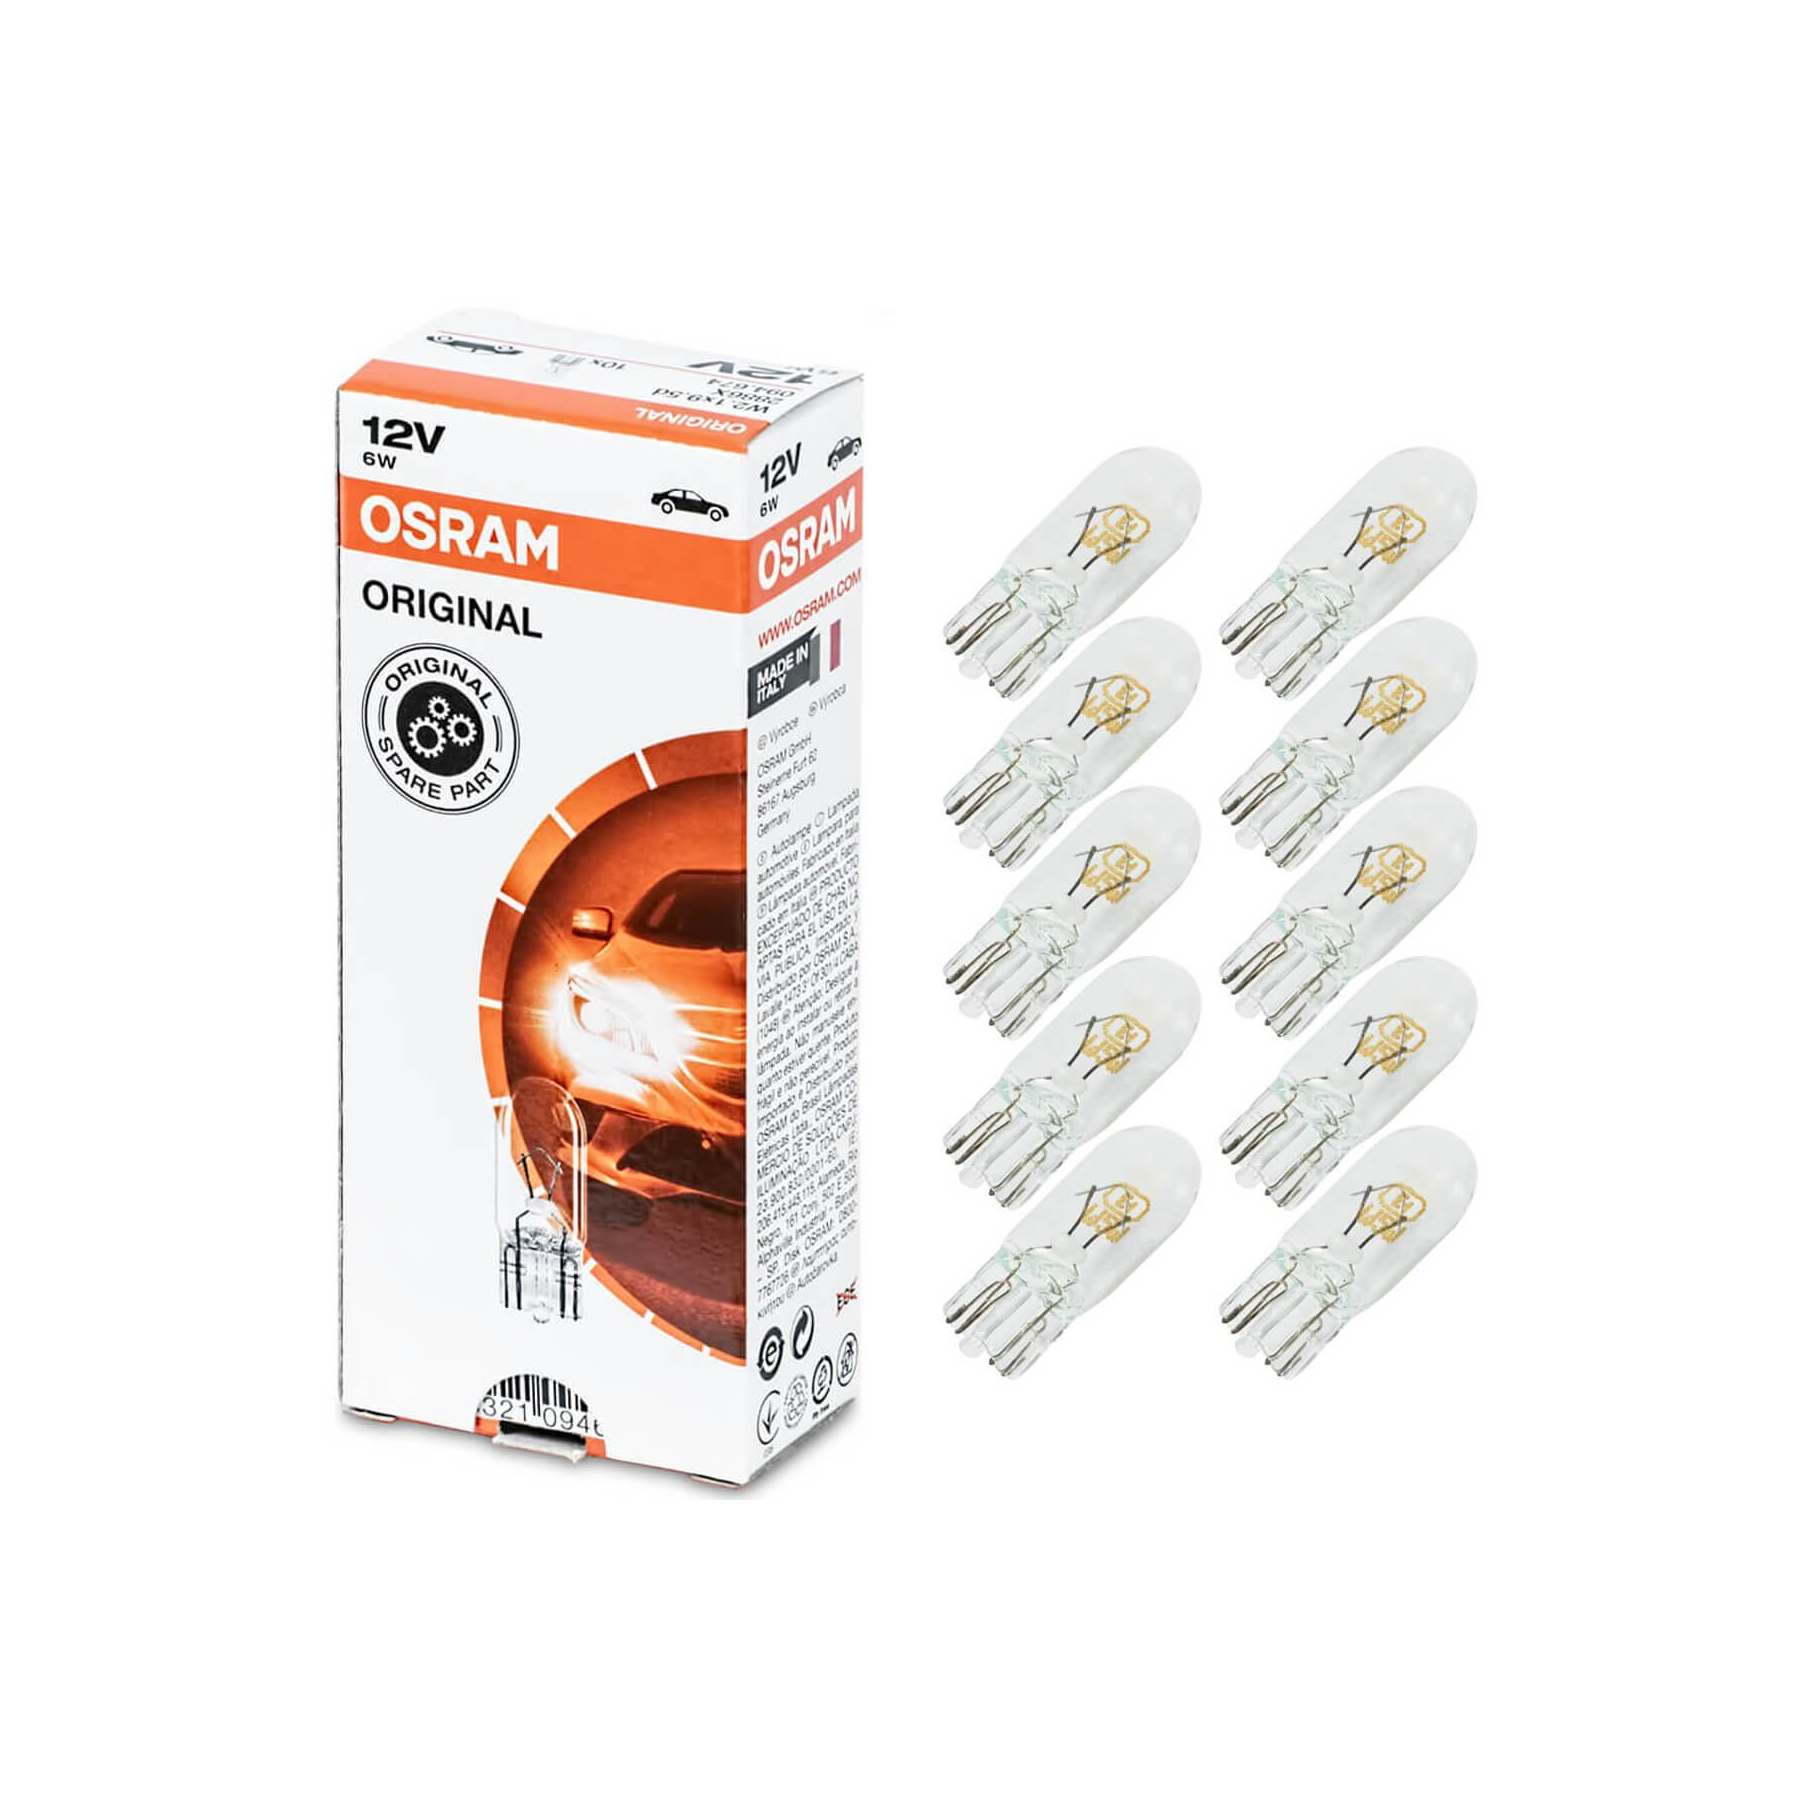 LED-Autolampe W5W T10 FLUX KFZ-Leuchtmittel